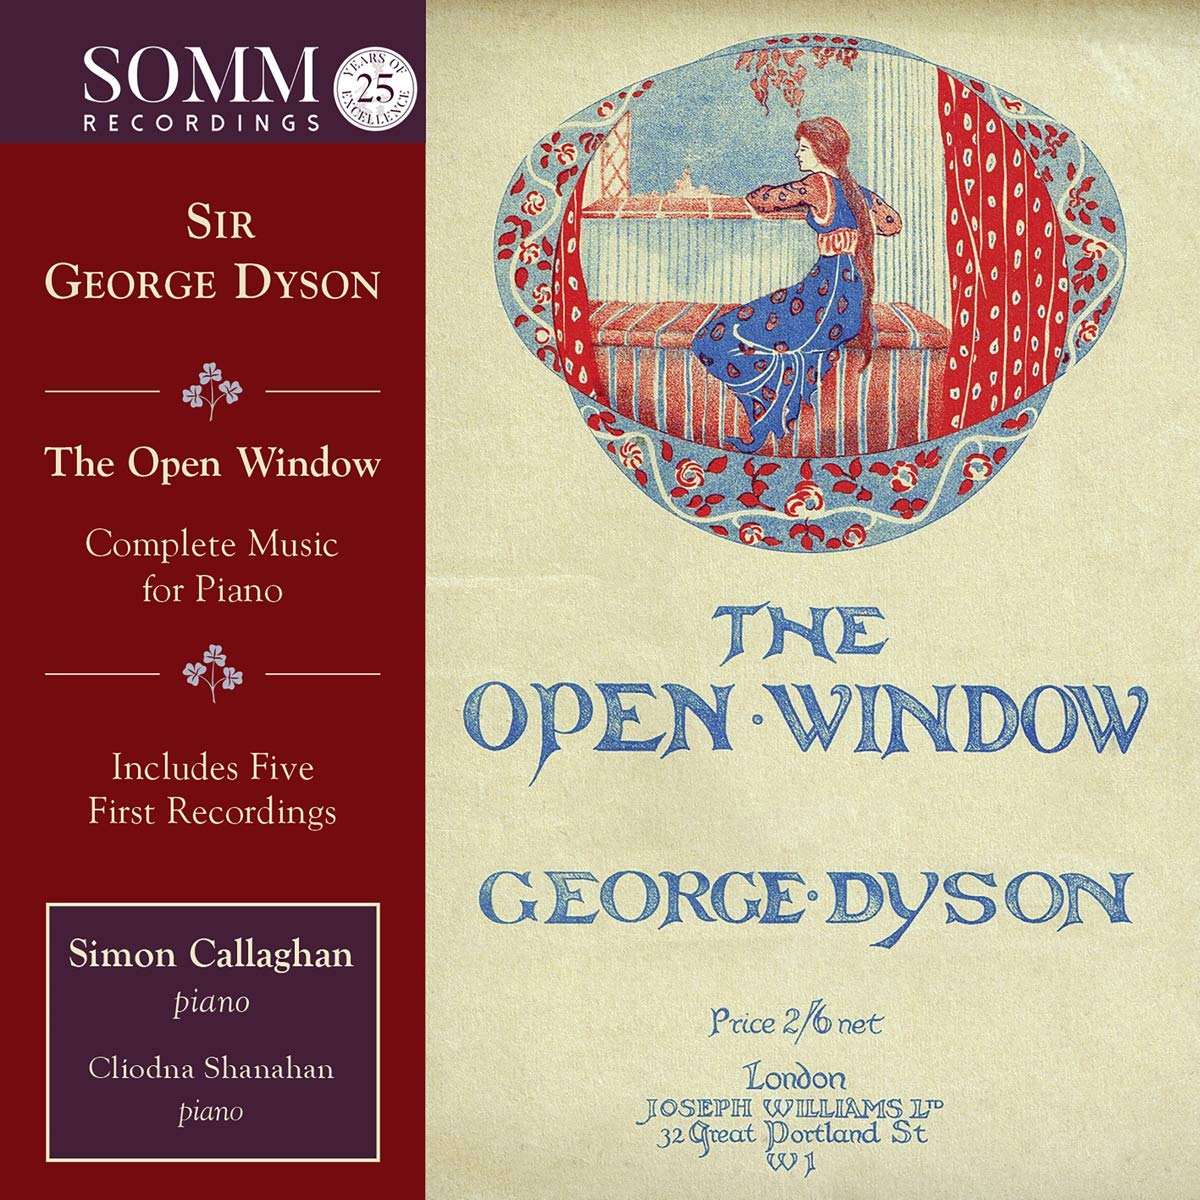 Audio Cd George Dyson - The Open Window - Complete Music For Piano (2 Cd) NUOVO SIGILLATO, EDIZIONE DEL 16/10/2020 SUBITO DISPONIBILE